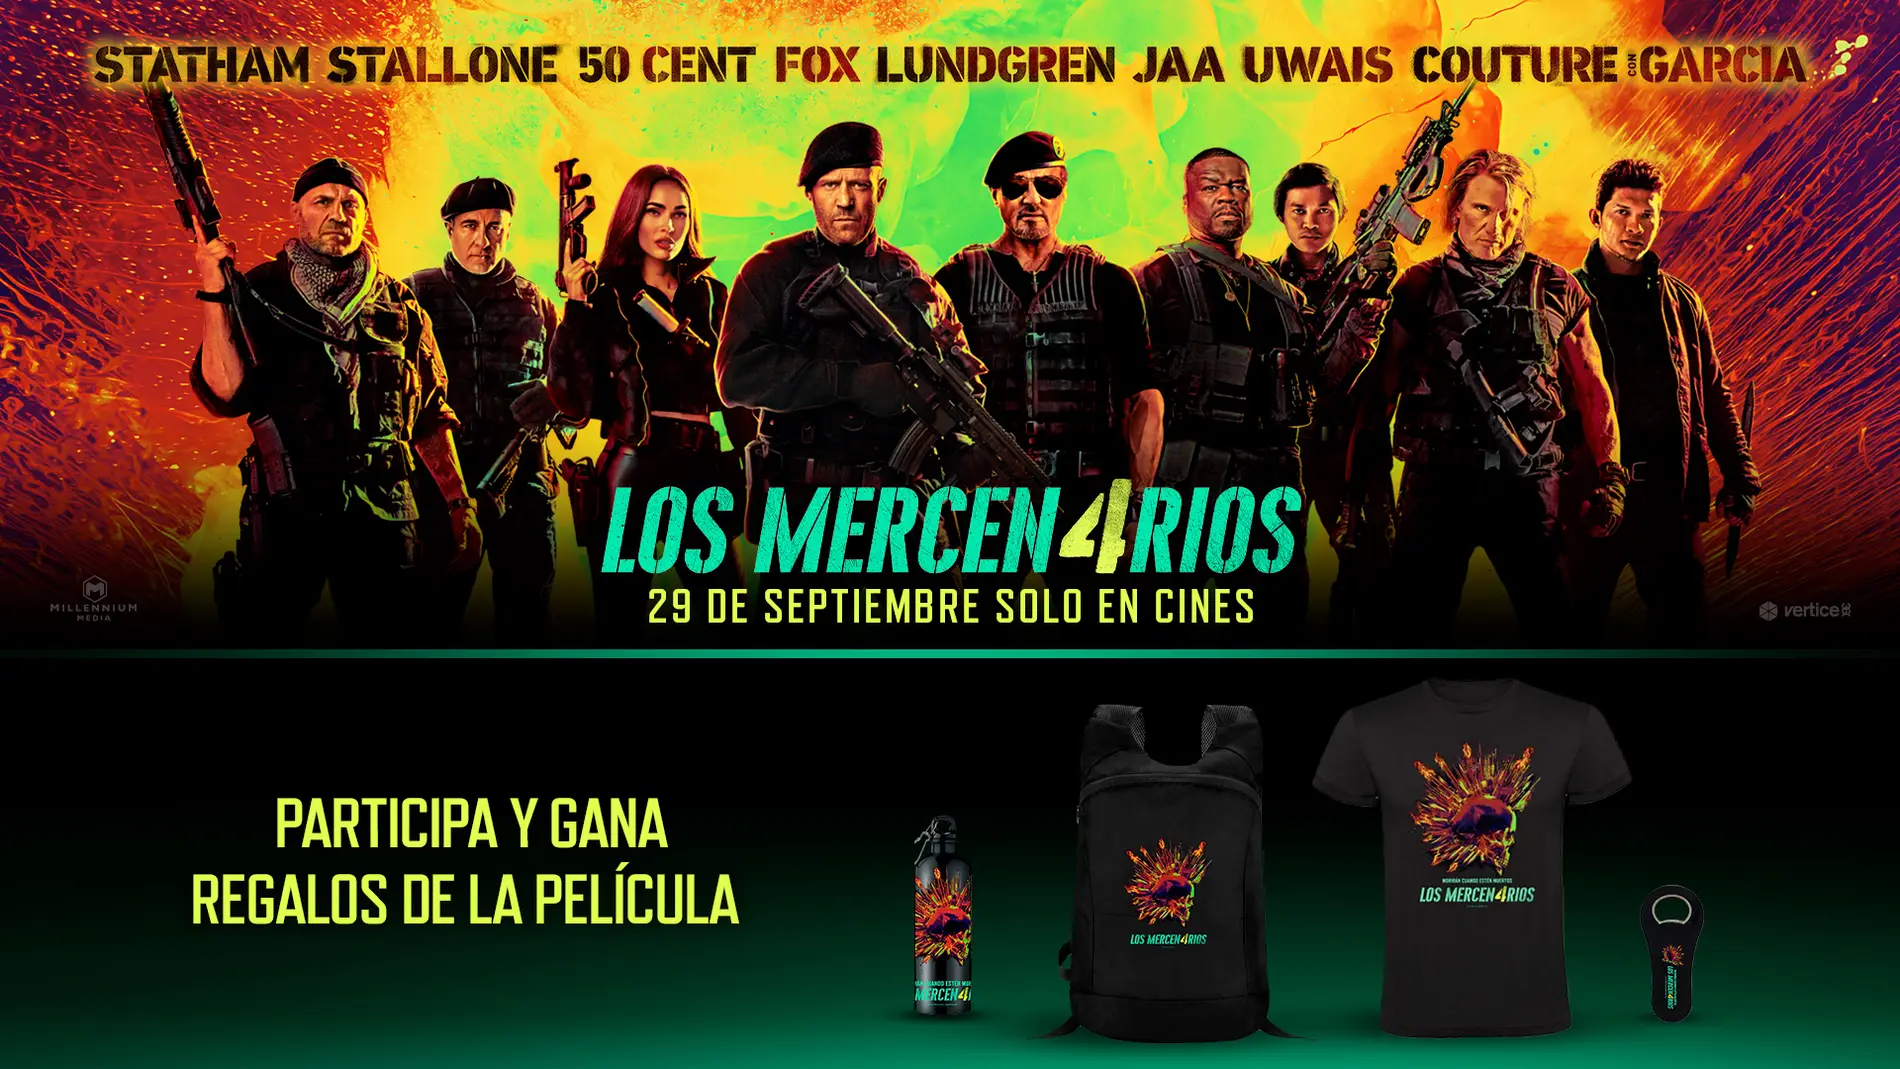 Concurso: Consigue un pack de merchandising de Los Mercen4rios